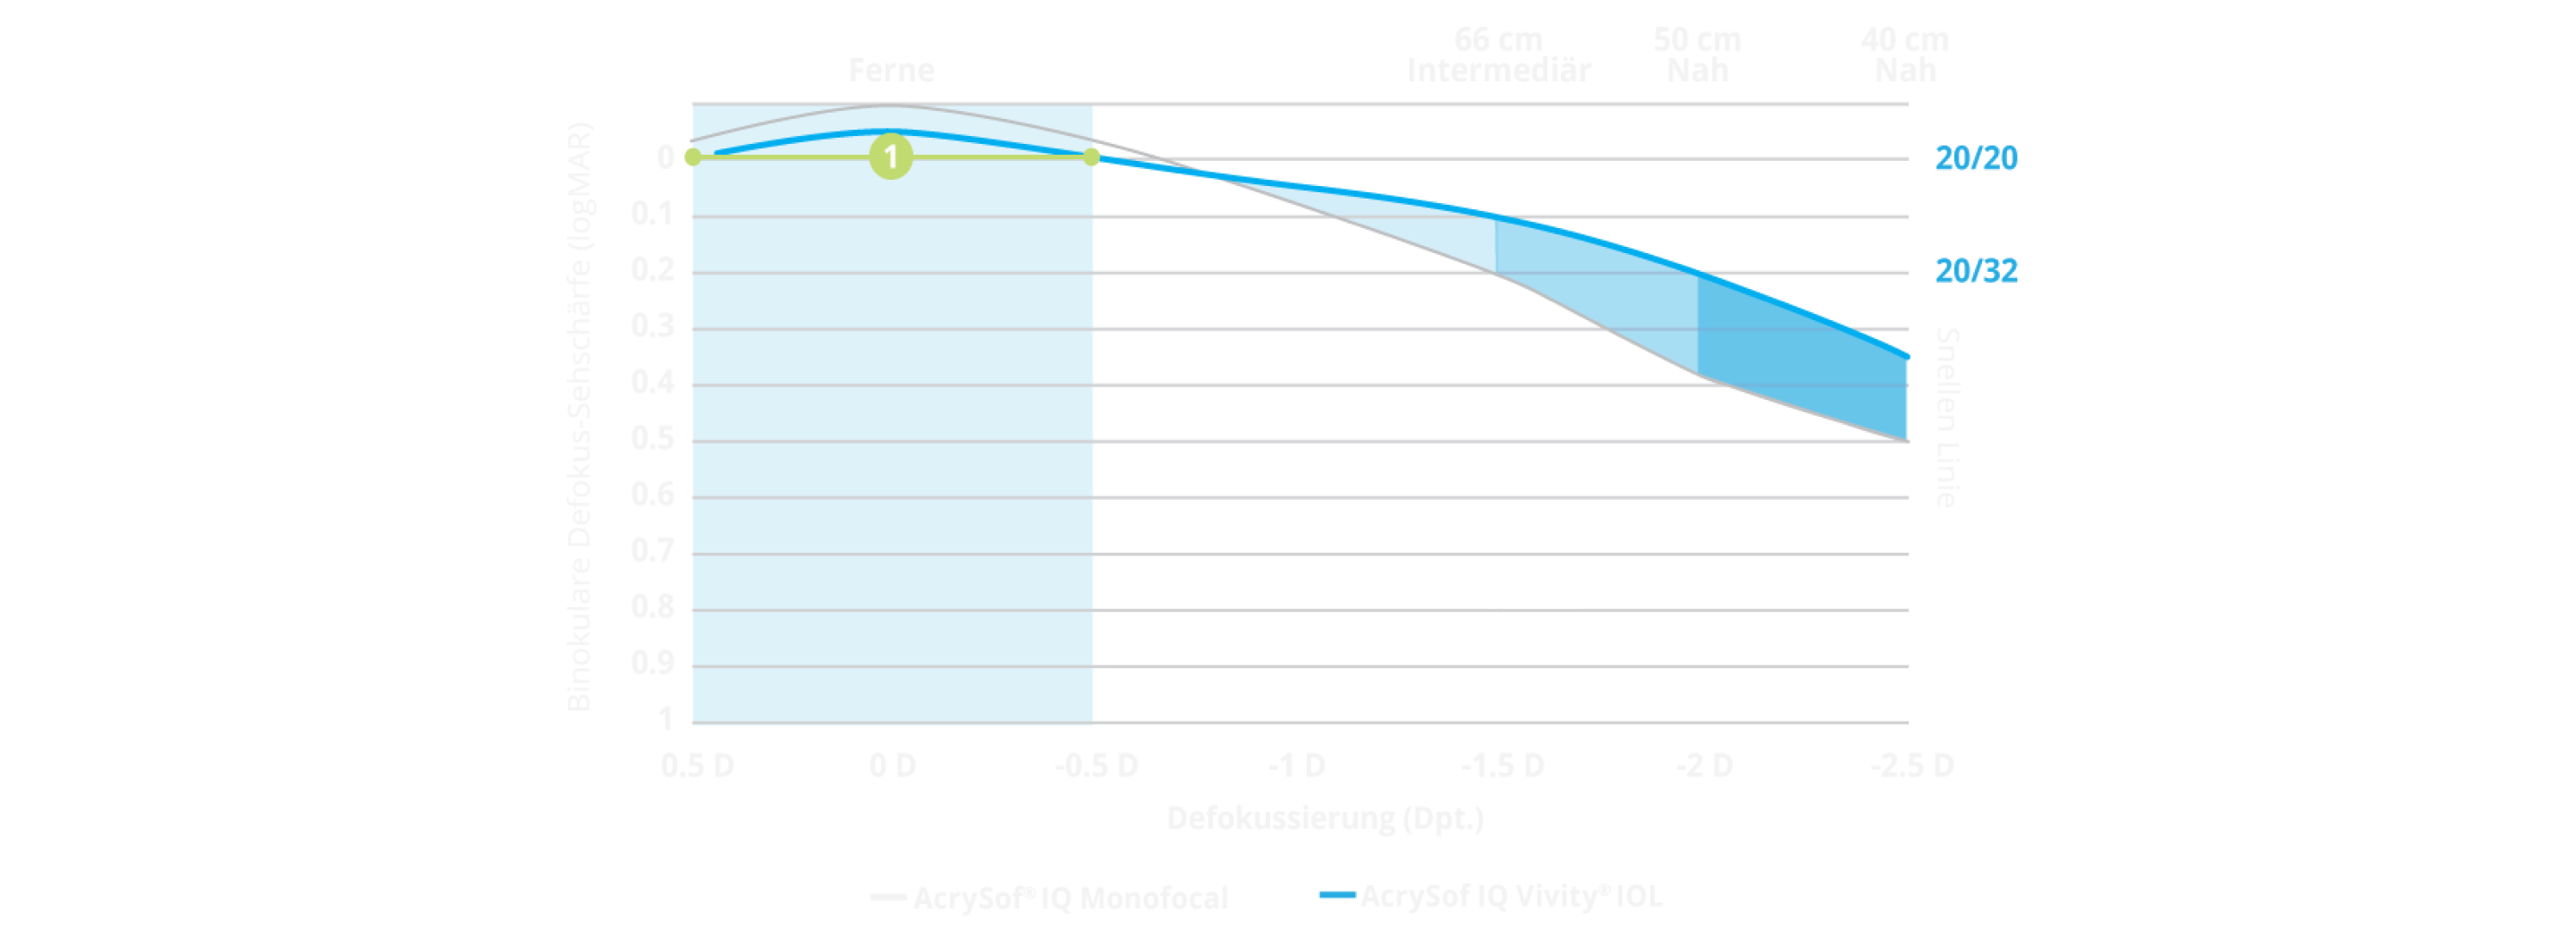 Grafik einer Defokuskurve zeigt den Defokusbereich der AcrySof IQ Vivity® im Vergleich zur AcrySof® IQ Monofokallinse. Ein Teil der Grafik ist hervorgehoben und verdeutlicht, dass Vivity® Patienten sogar mit einem Refraktionsfehler von ±0,5 Dioptrien noch einen Visus von 20/20 erreichen können.